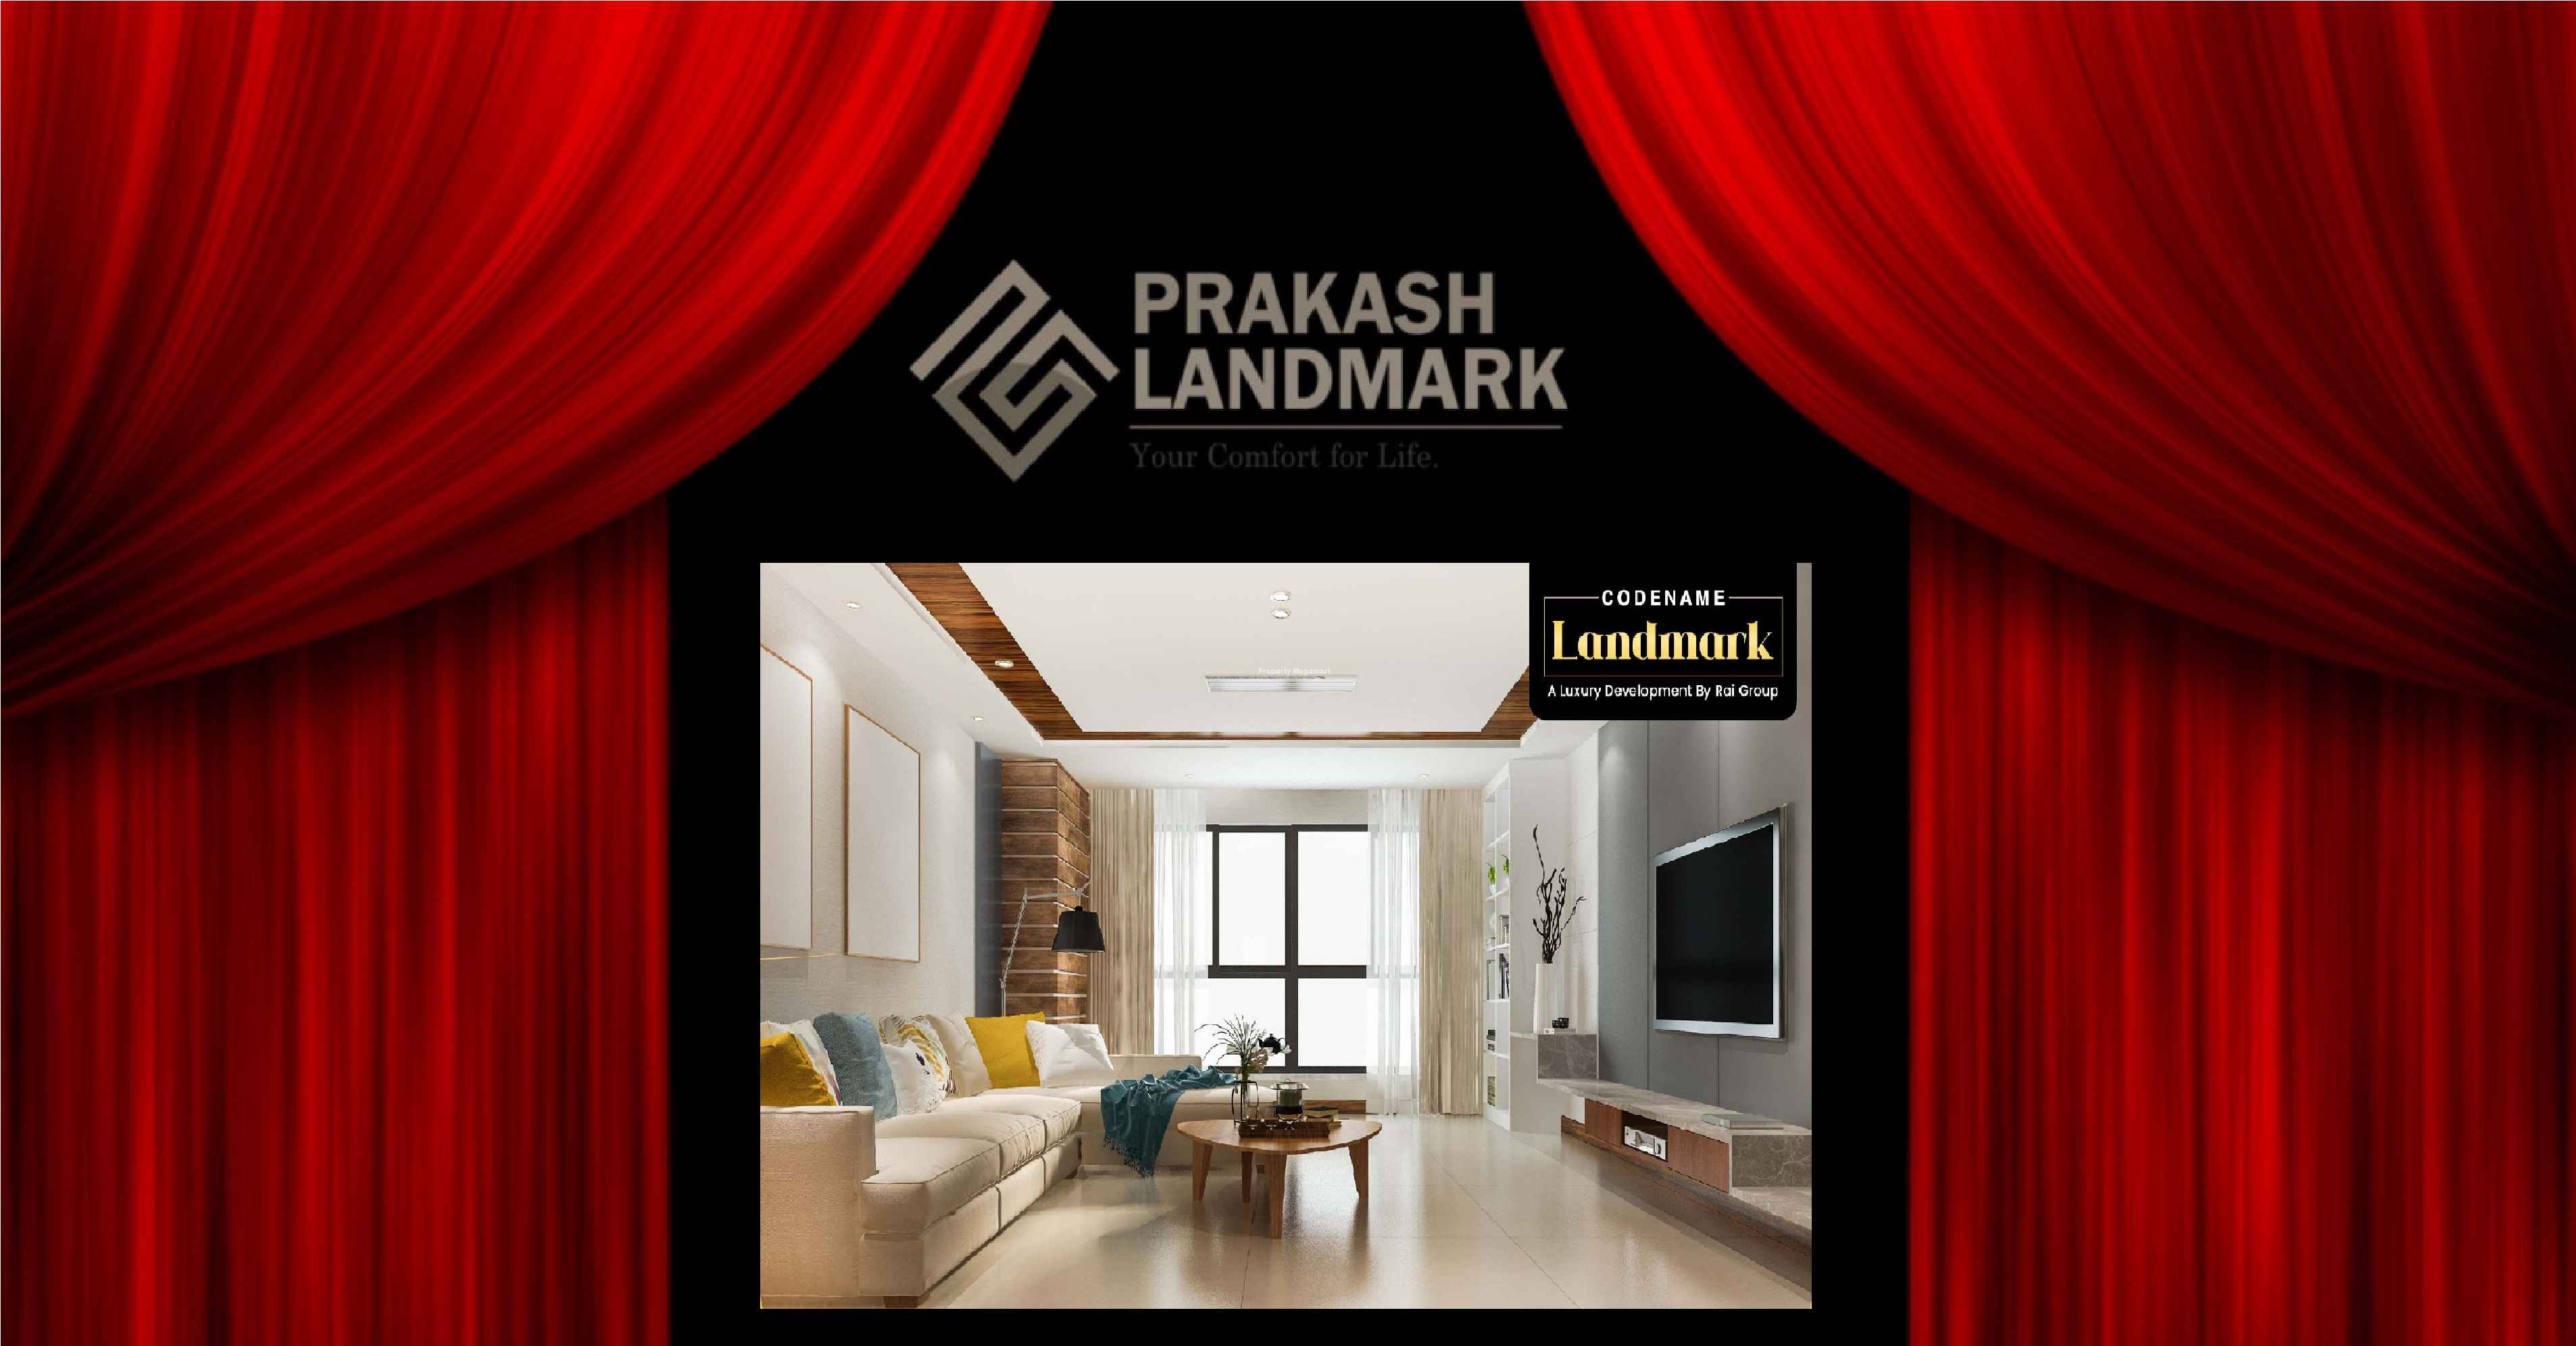 Prakash Landmark